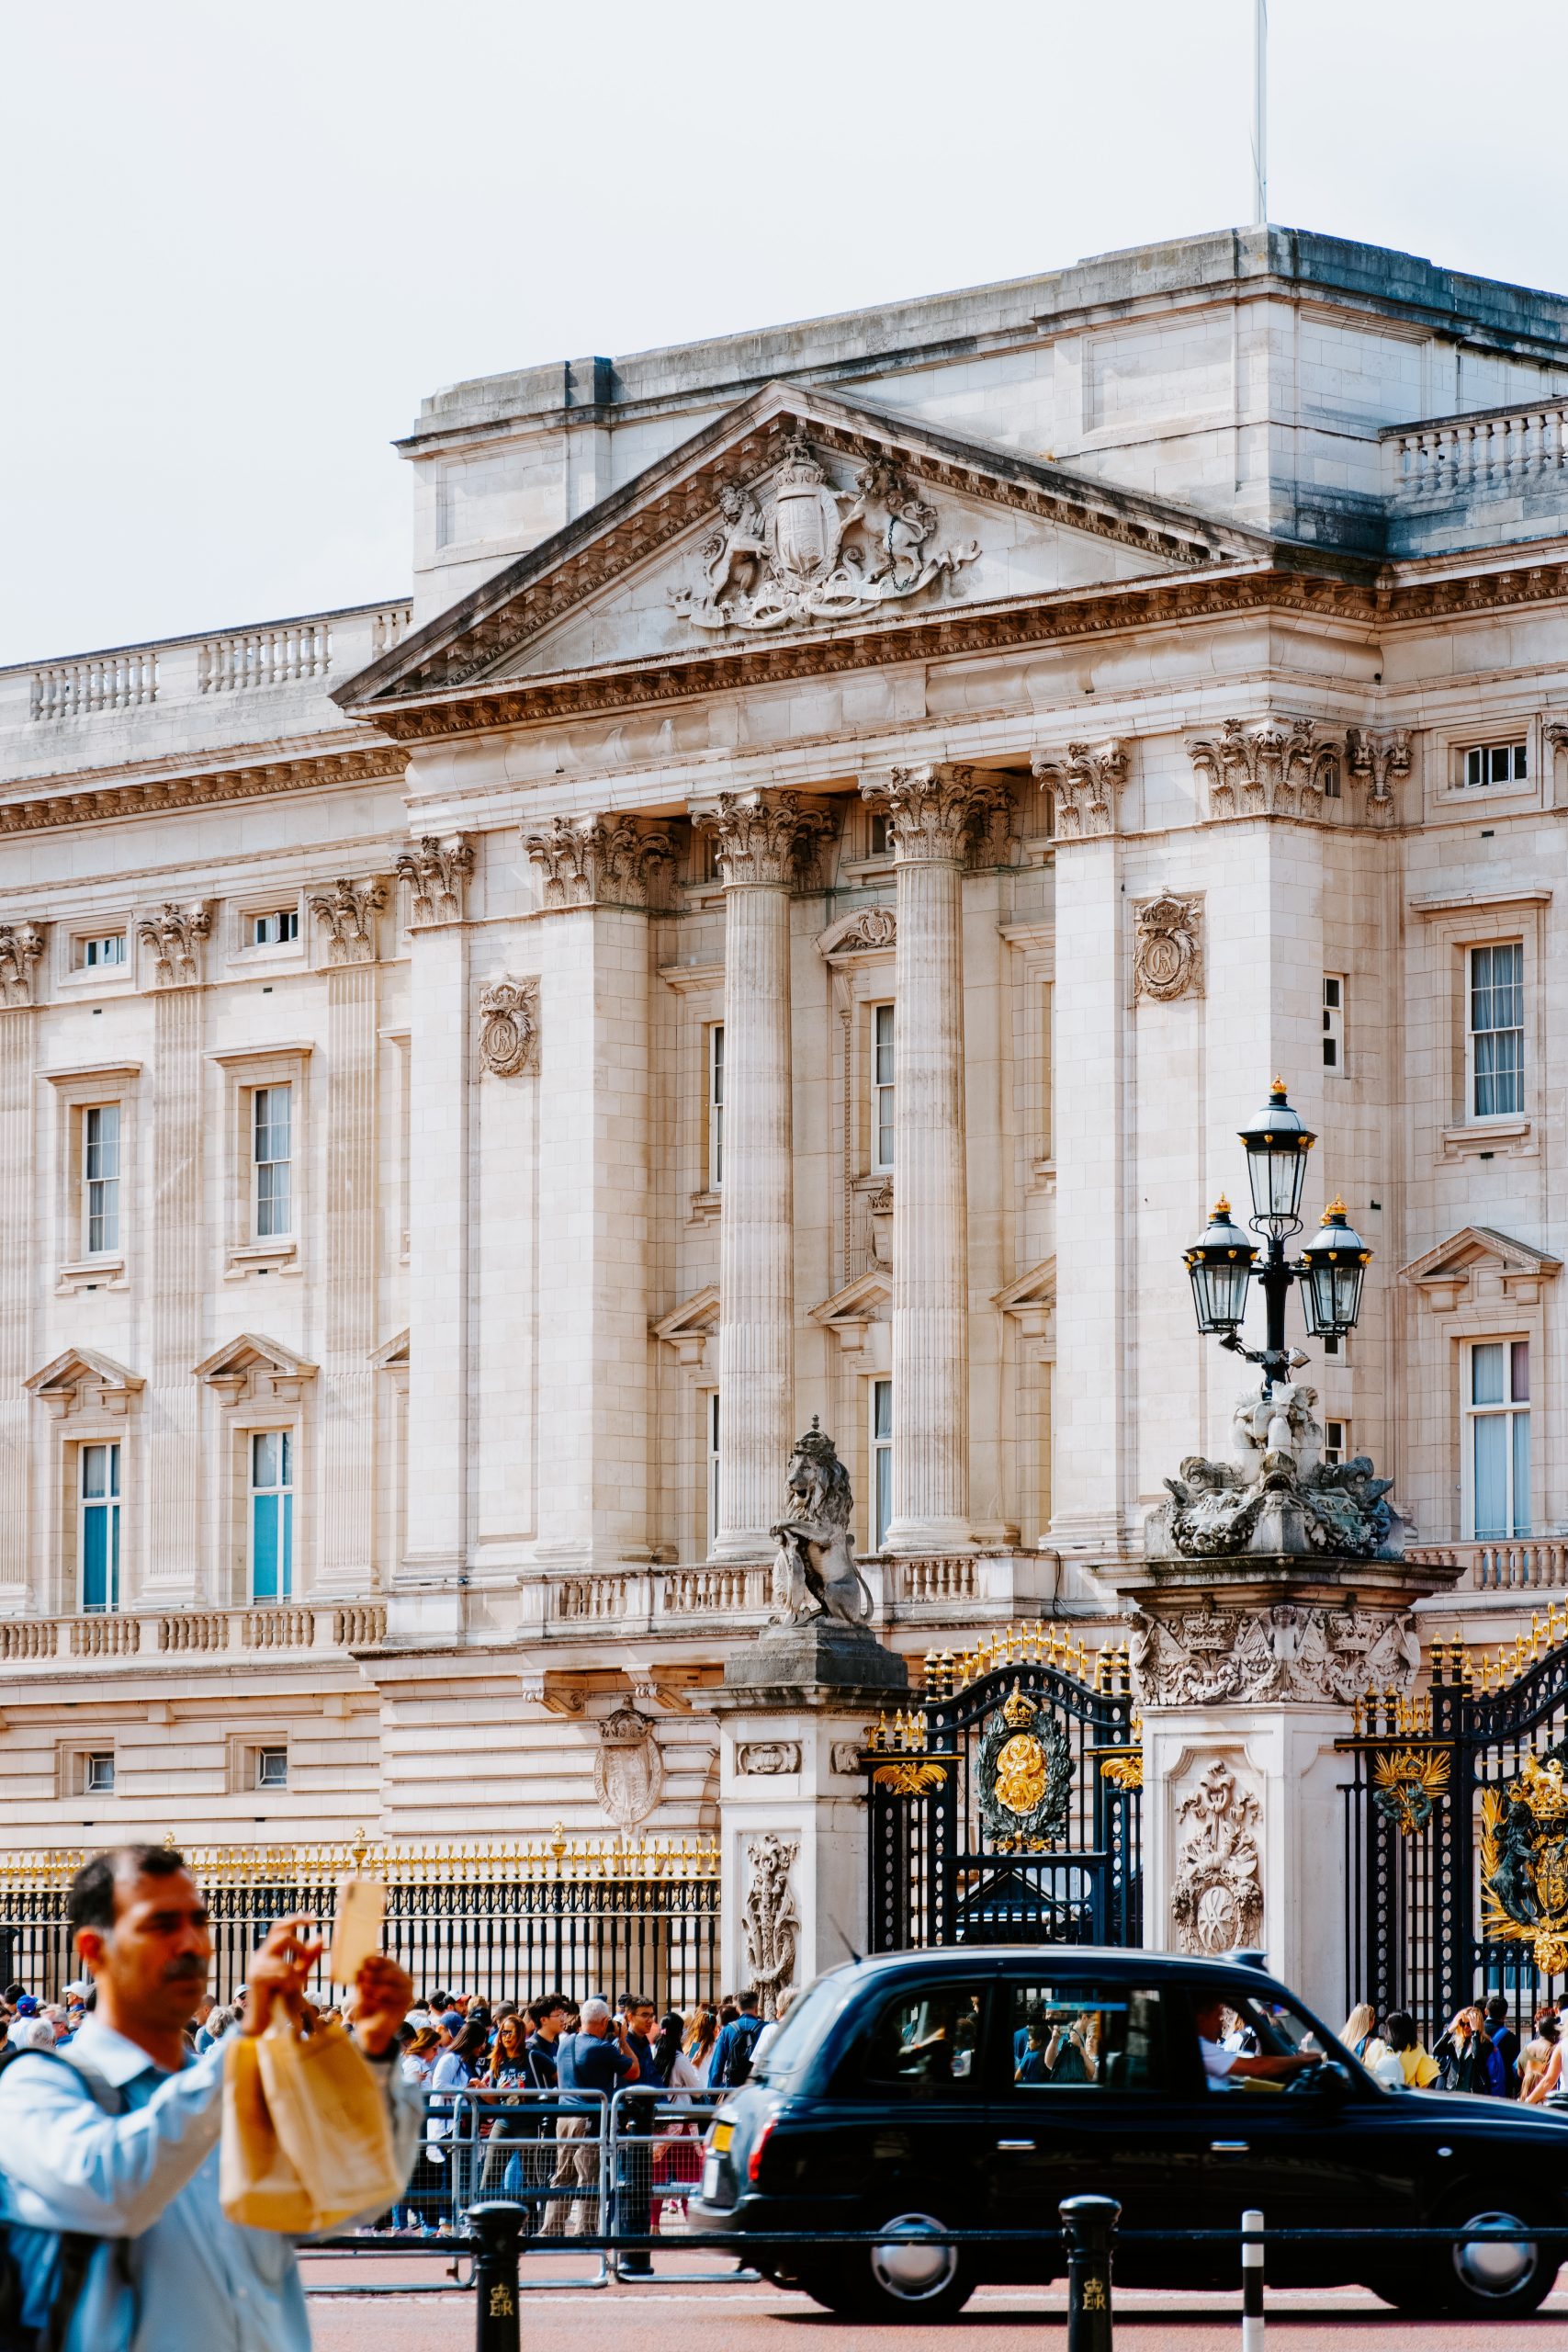 The famous Buckingham Palace